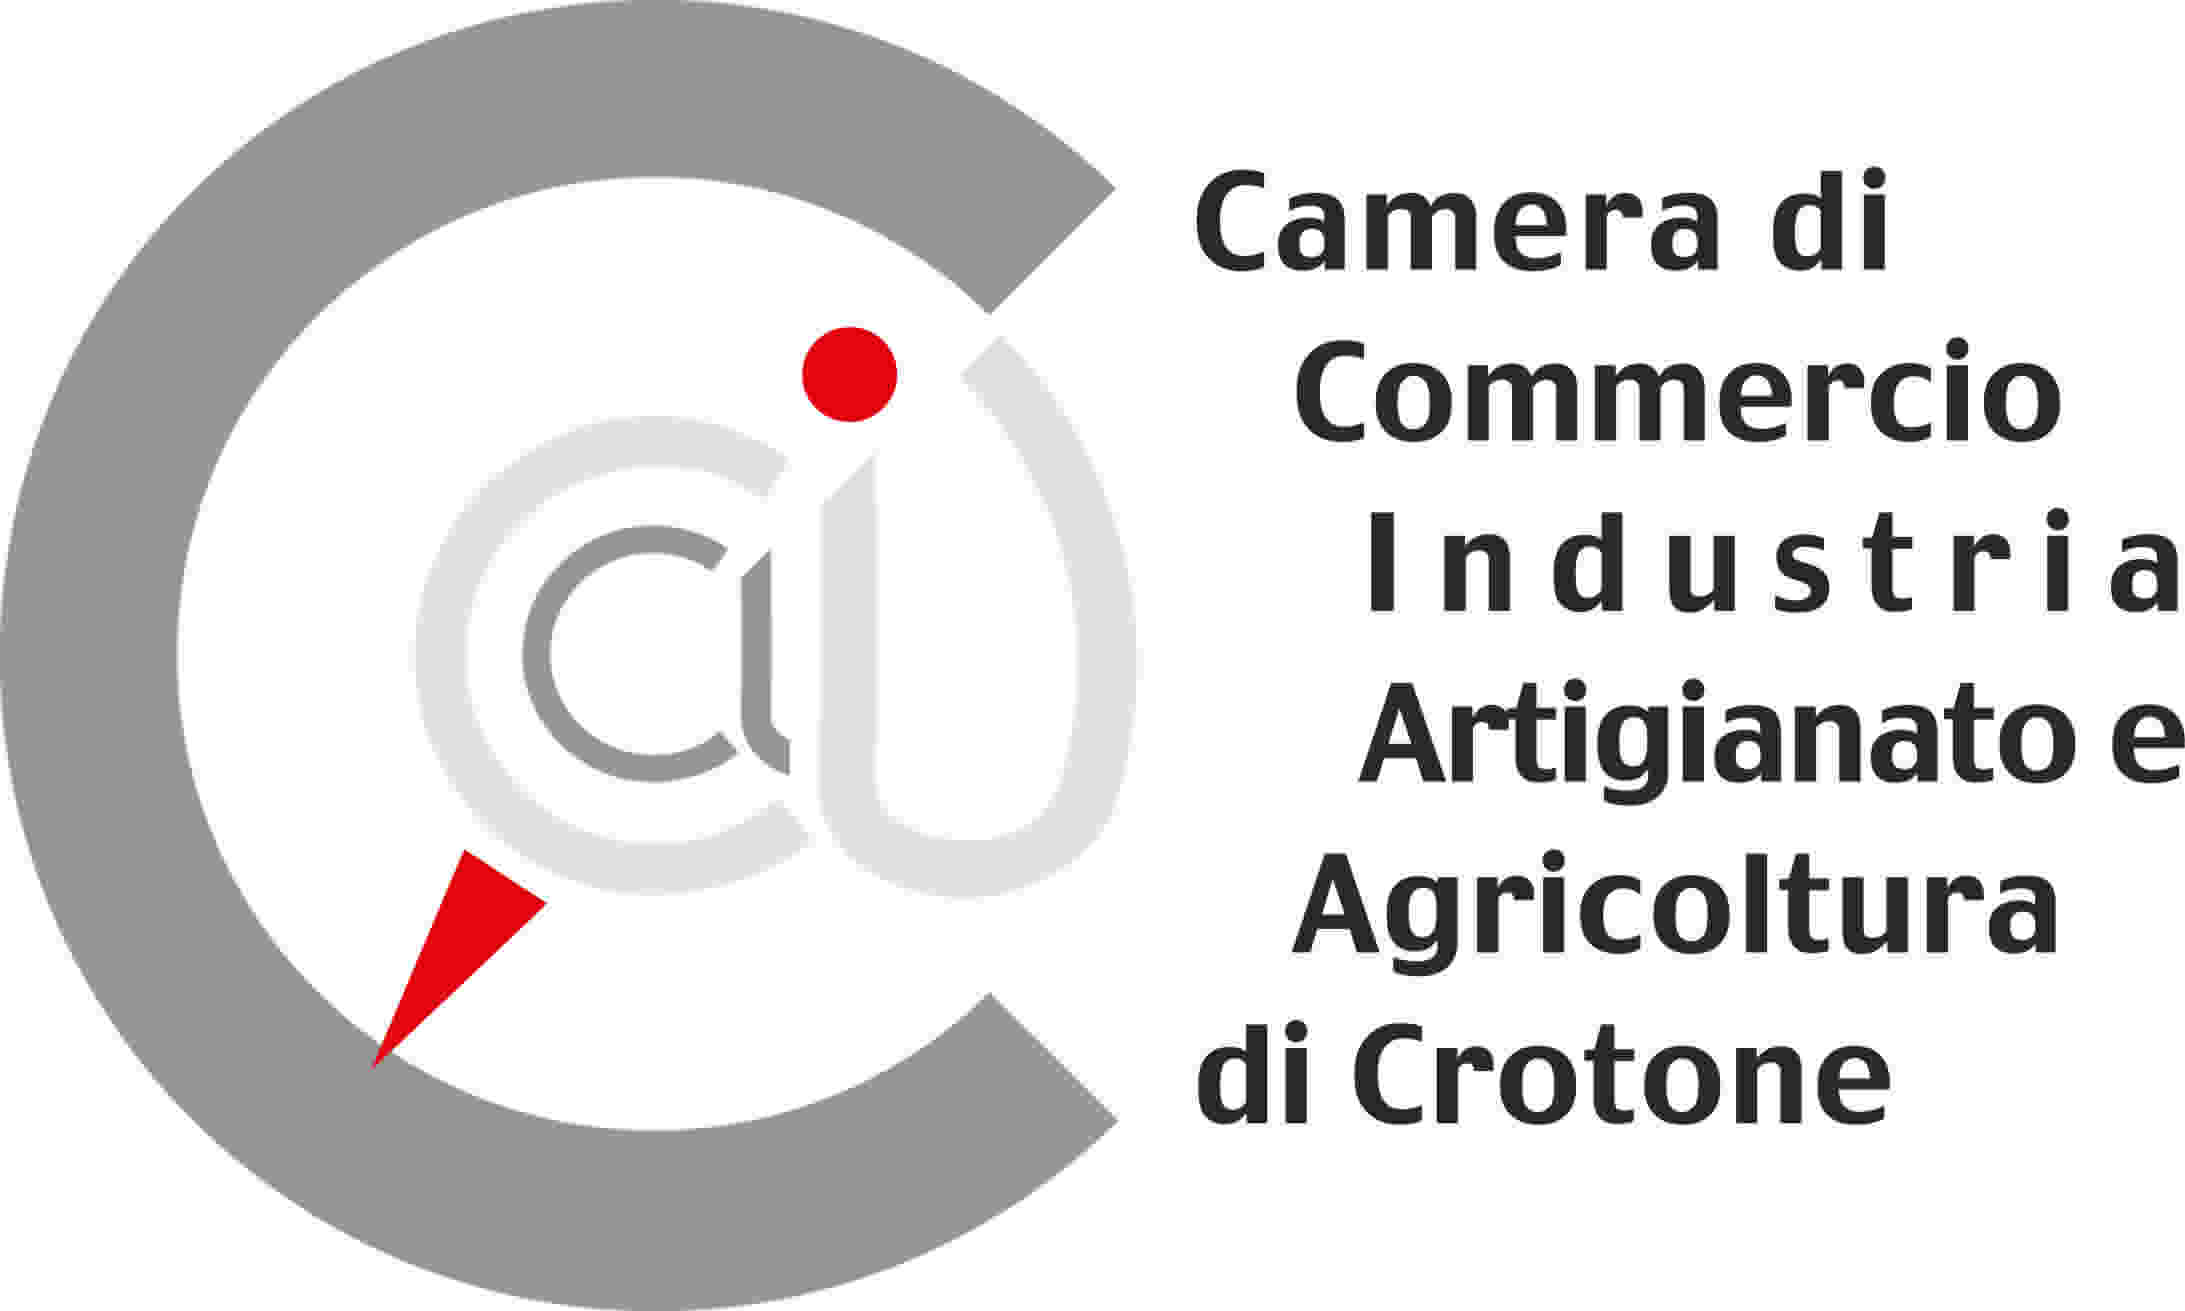 Crotone Logo - Il logo della Camera - CCIAA DI CROTONE